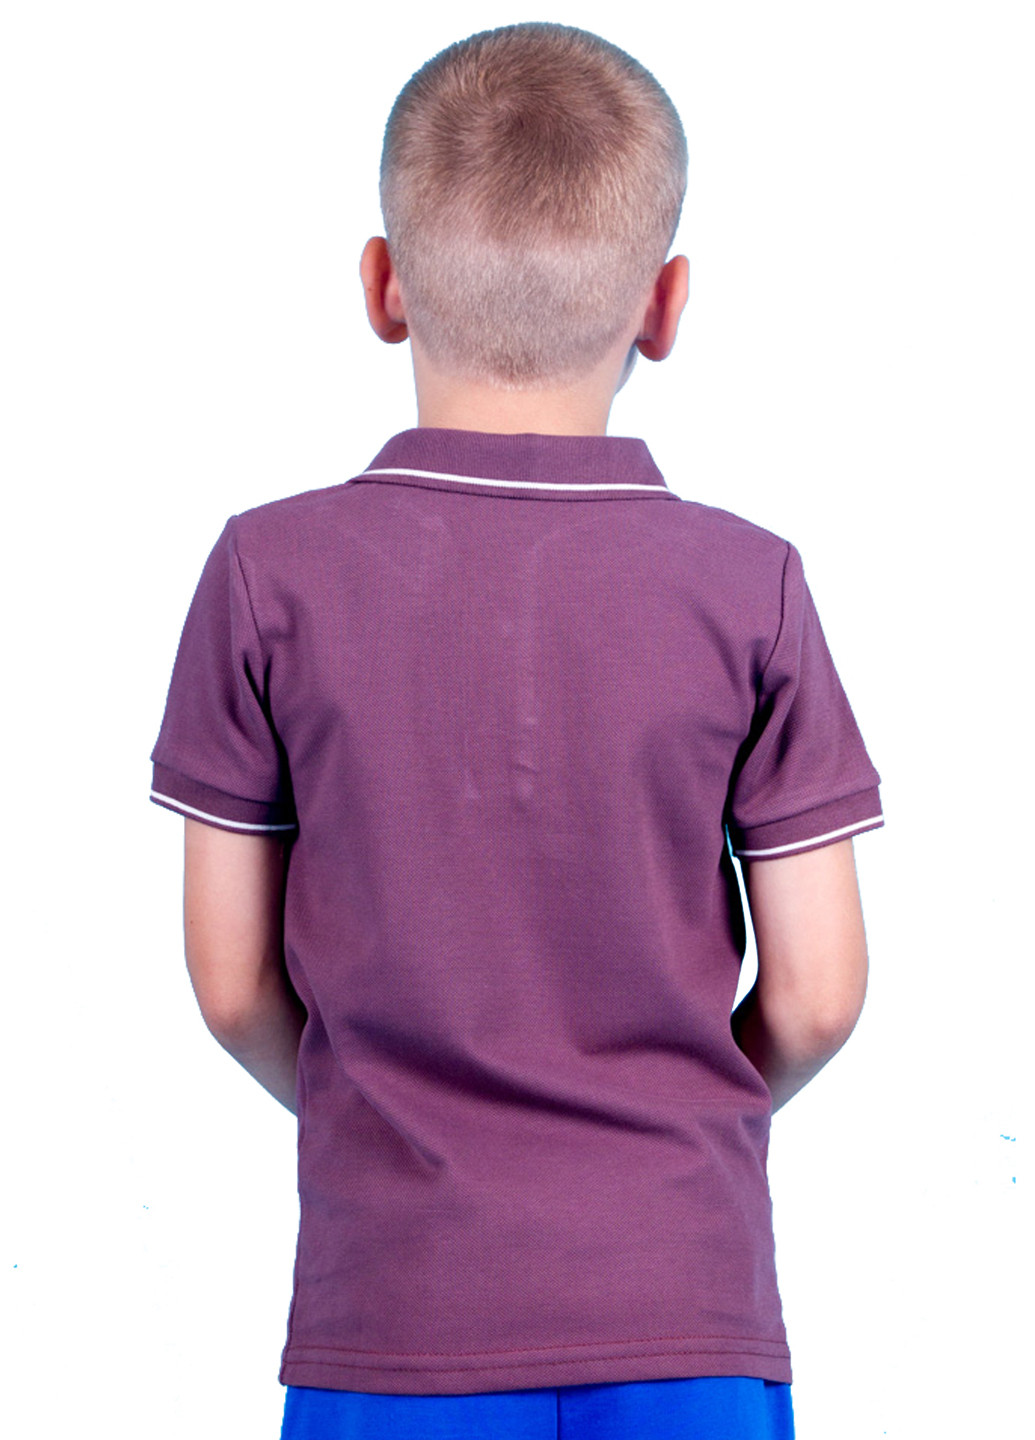 Коричневая детская футболка-поло для мальчика Kosta